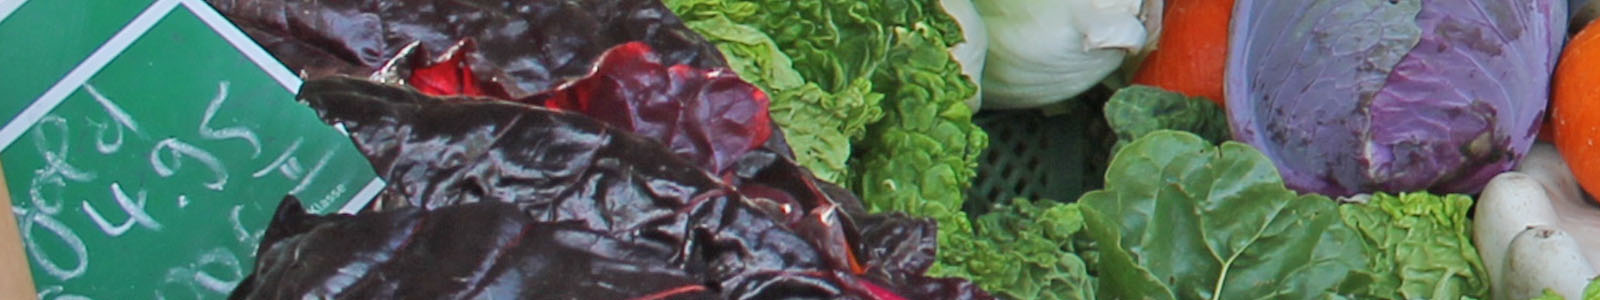 Salat und Rotkohl mit Verkaufsschild ©DLR